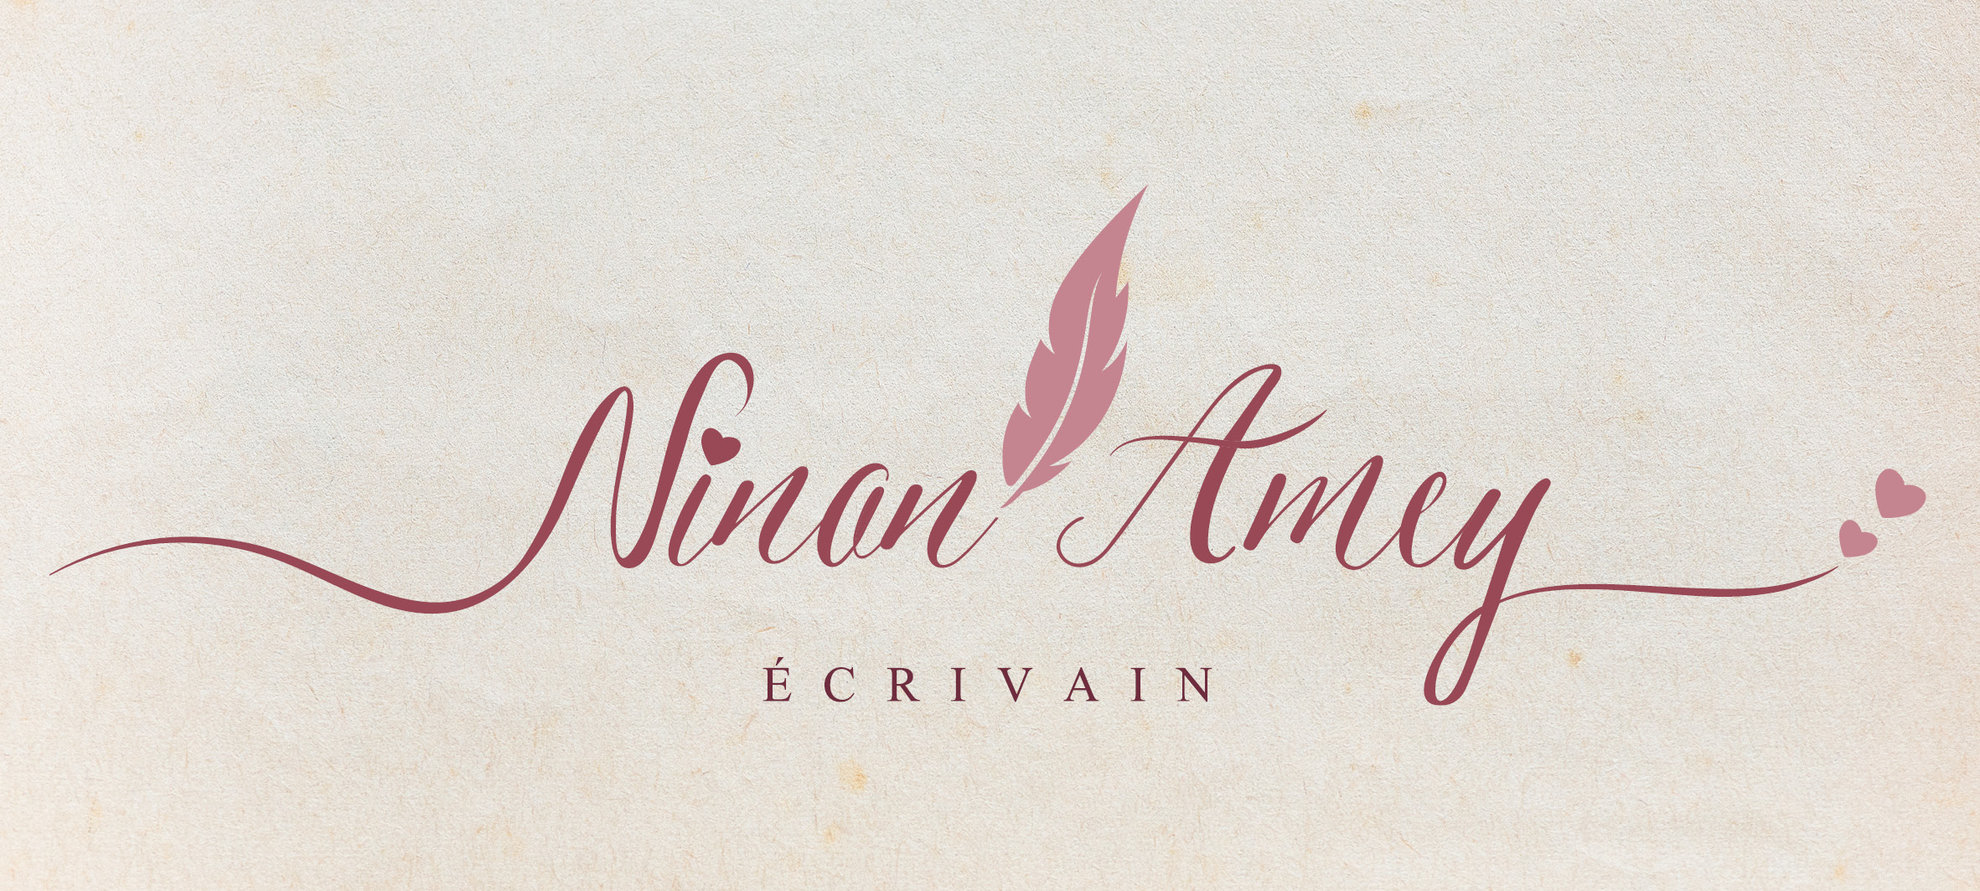 Logotype pour Ninon Amey écrivain.